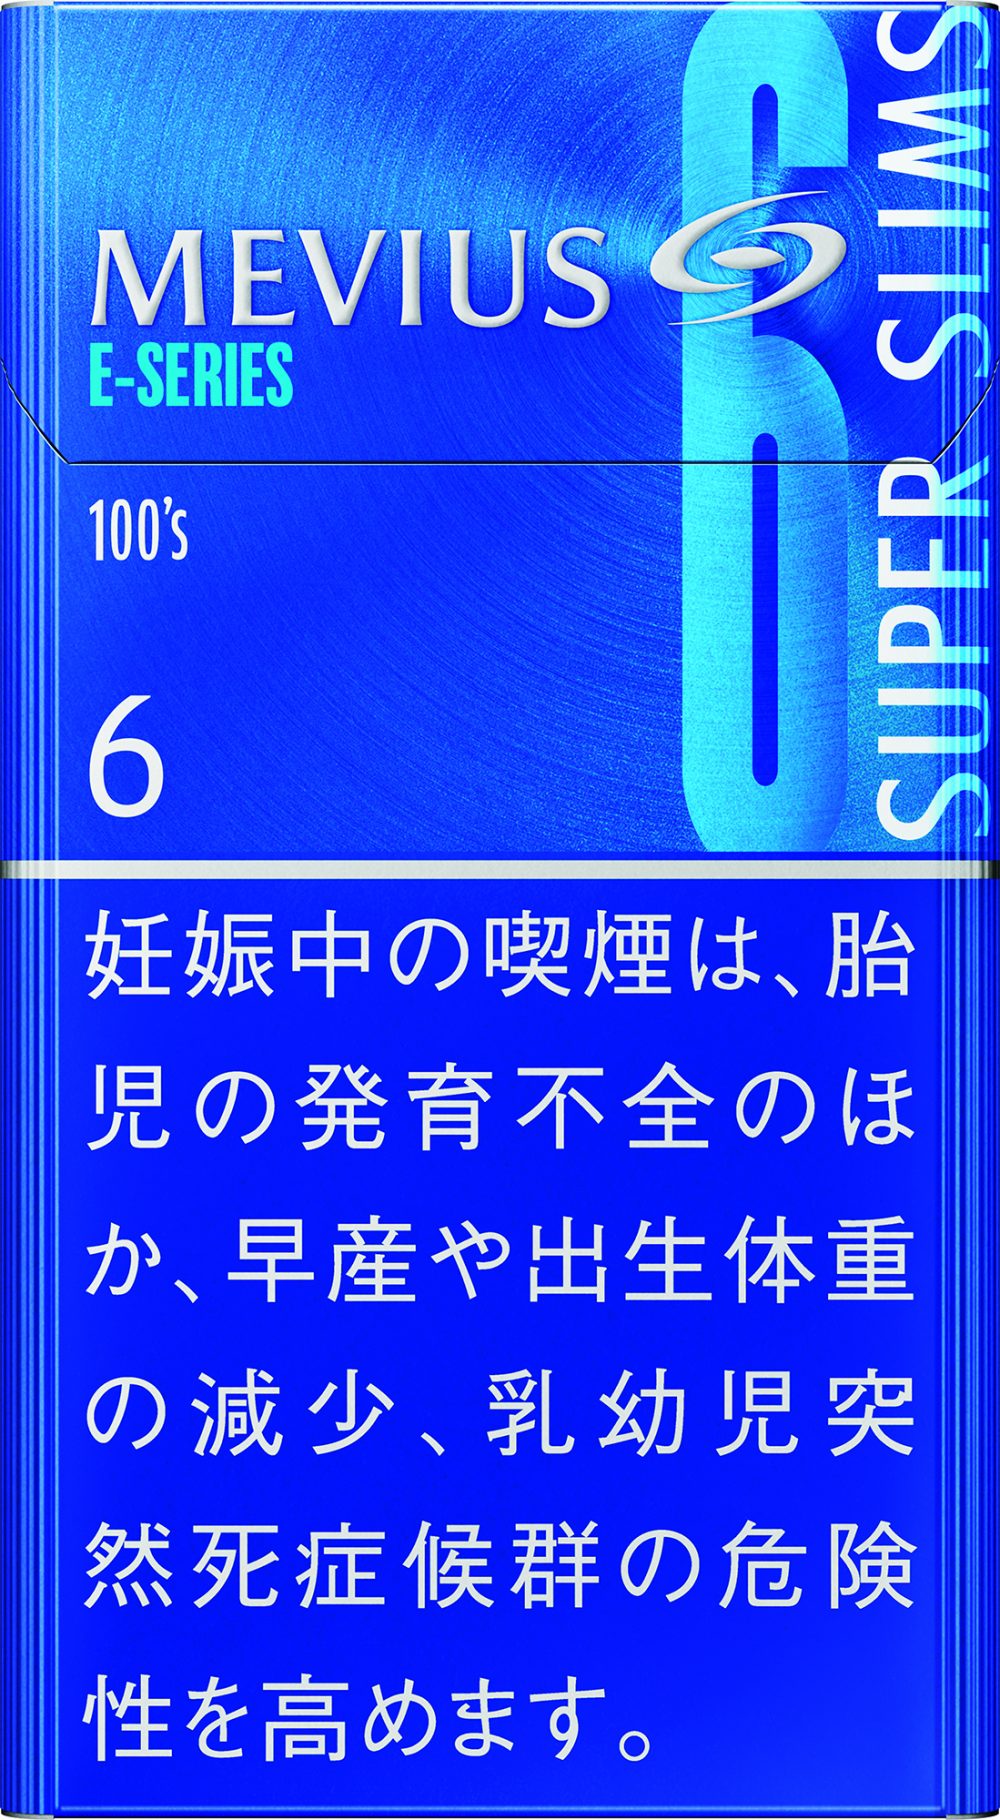 メビウス・Eシリーズ・6・100’s・スリム